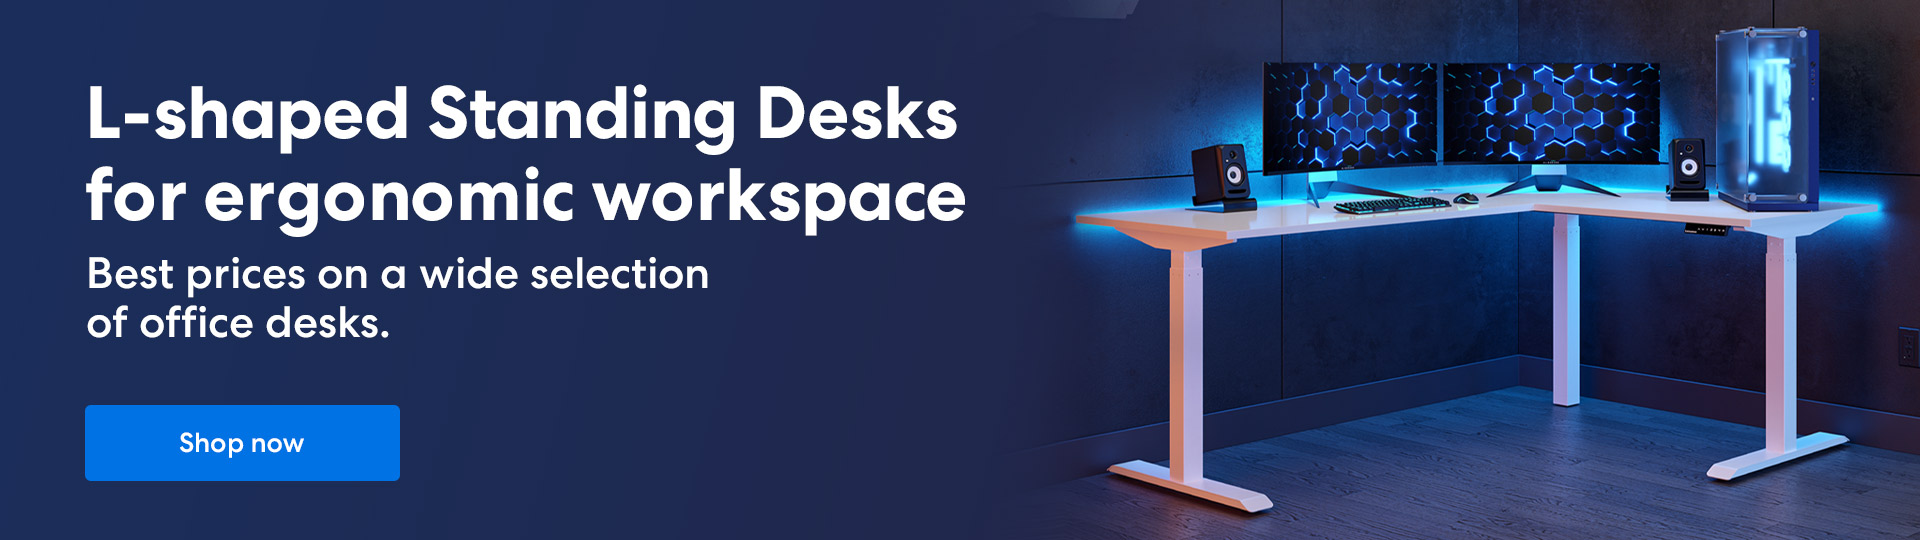 L-shaped Standing Desks